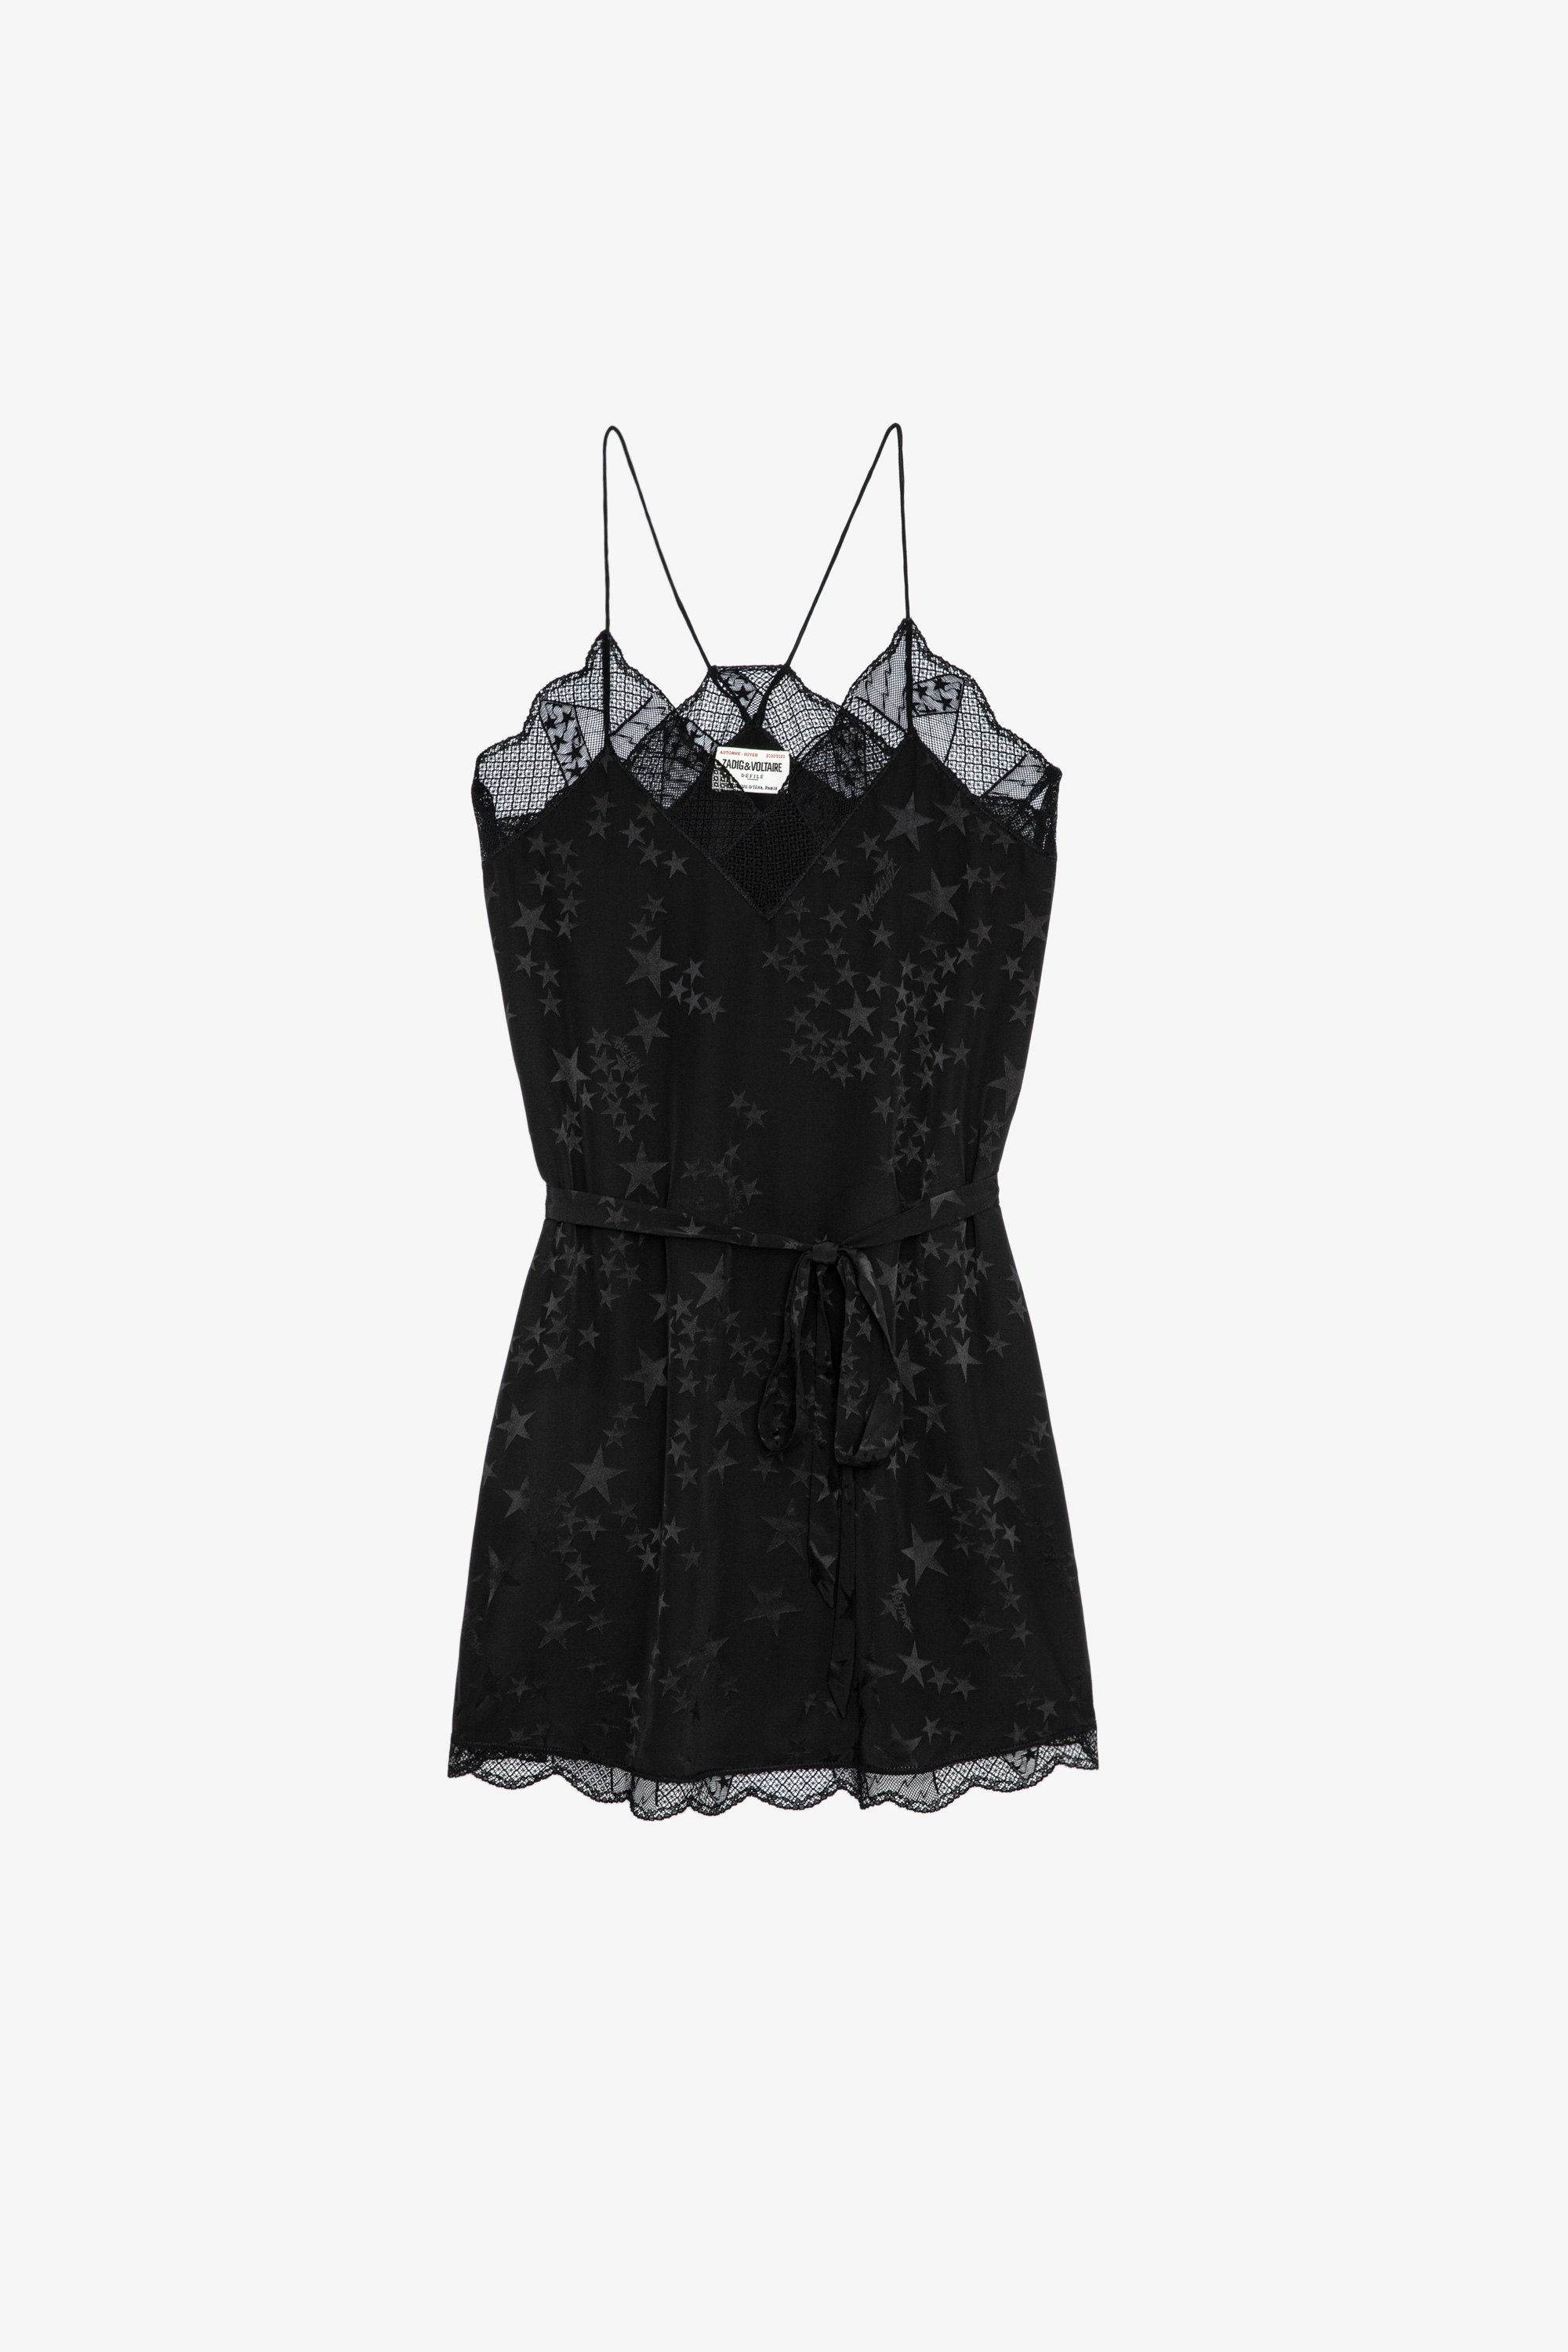 Ristyz Jac Stars Silk Dress Women’s star-studded black silk jacquard mini dress tied at the waist with lace trim